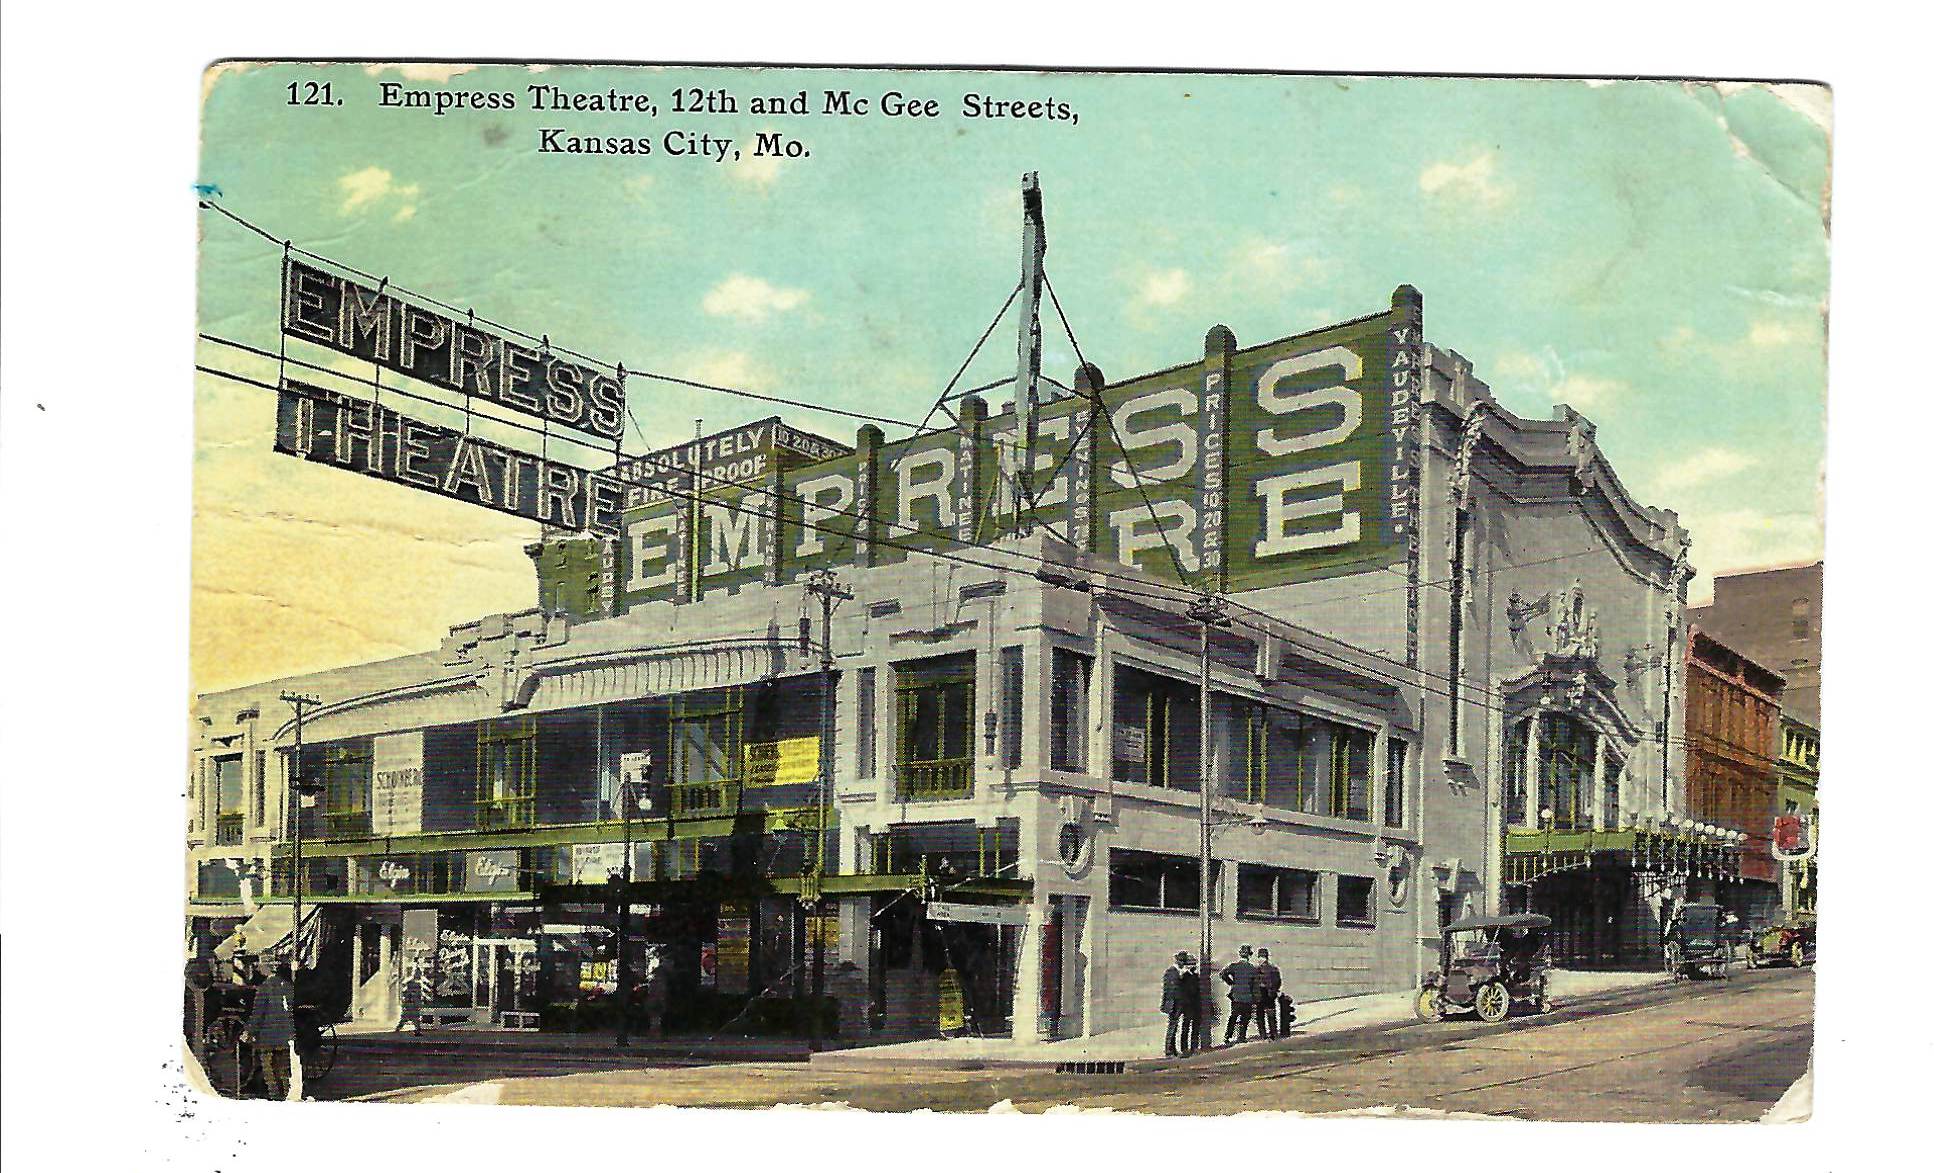 Empress Theater once a hotspot for Vaudeville